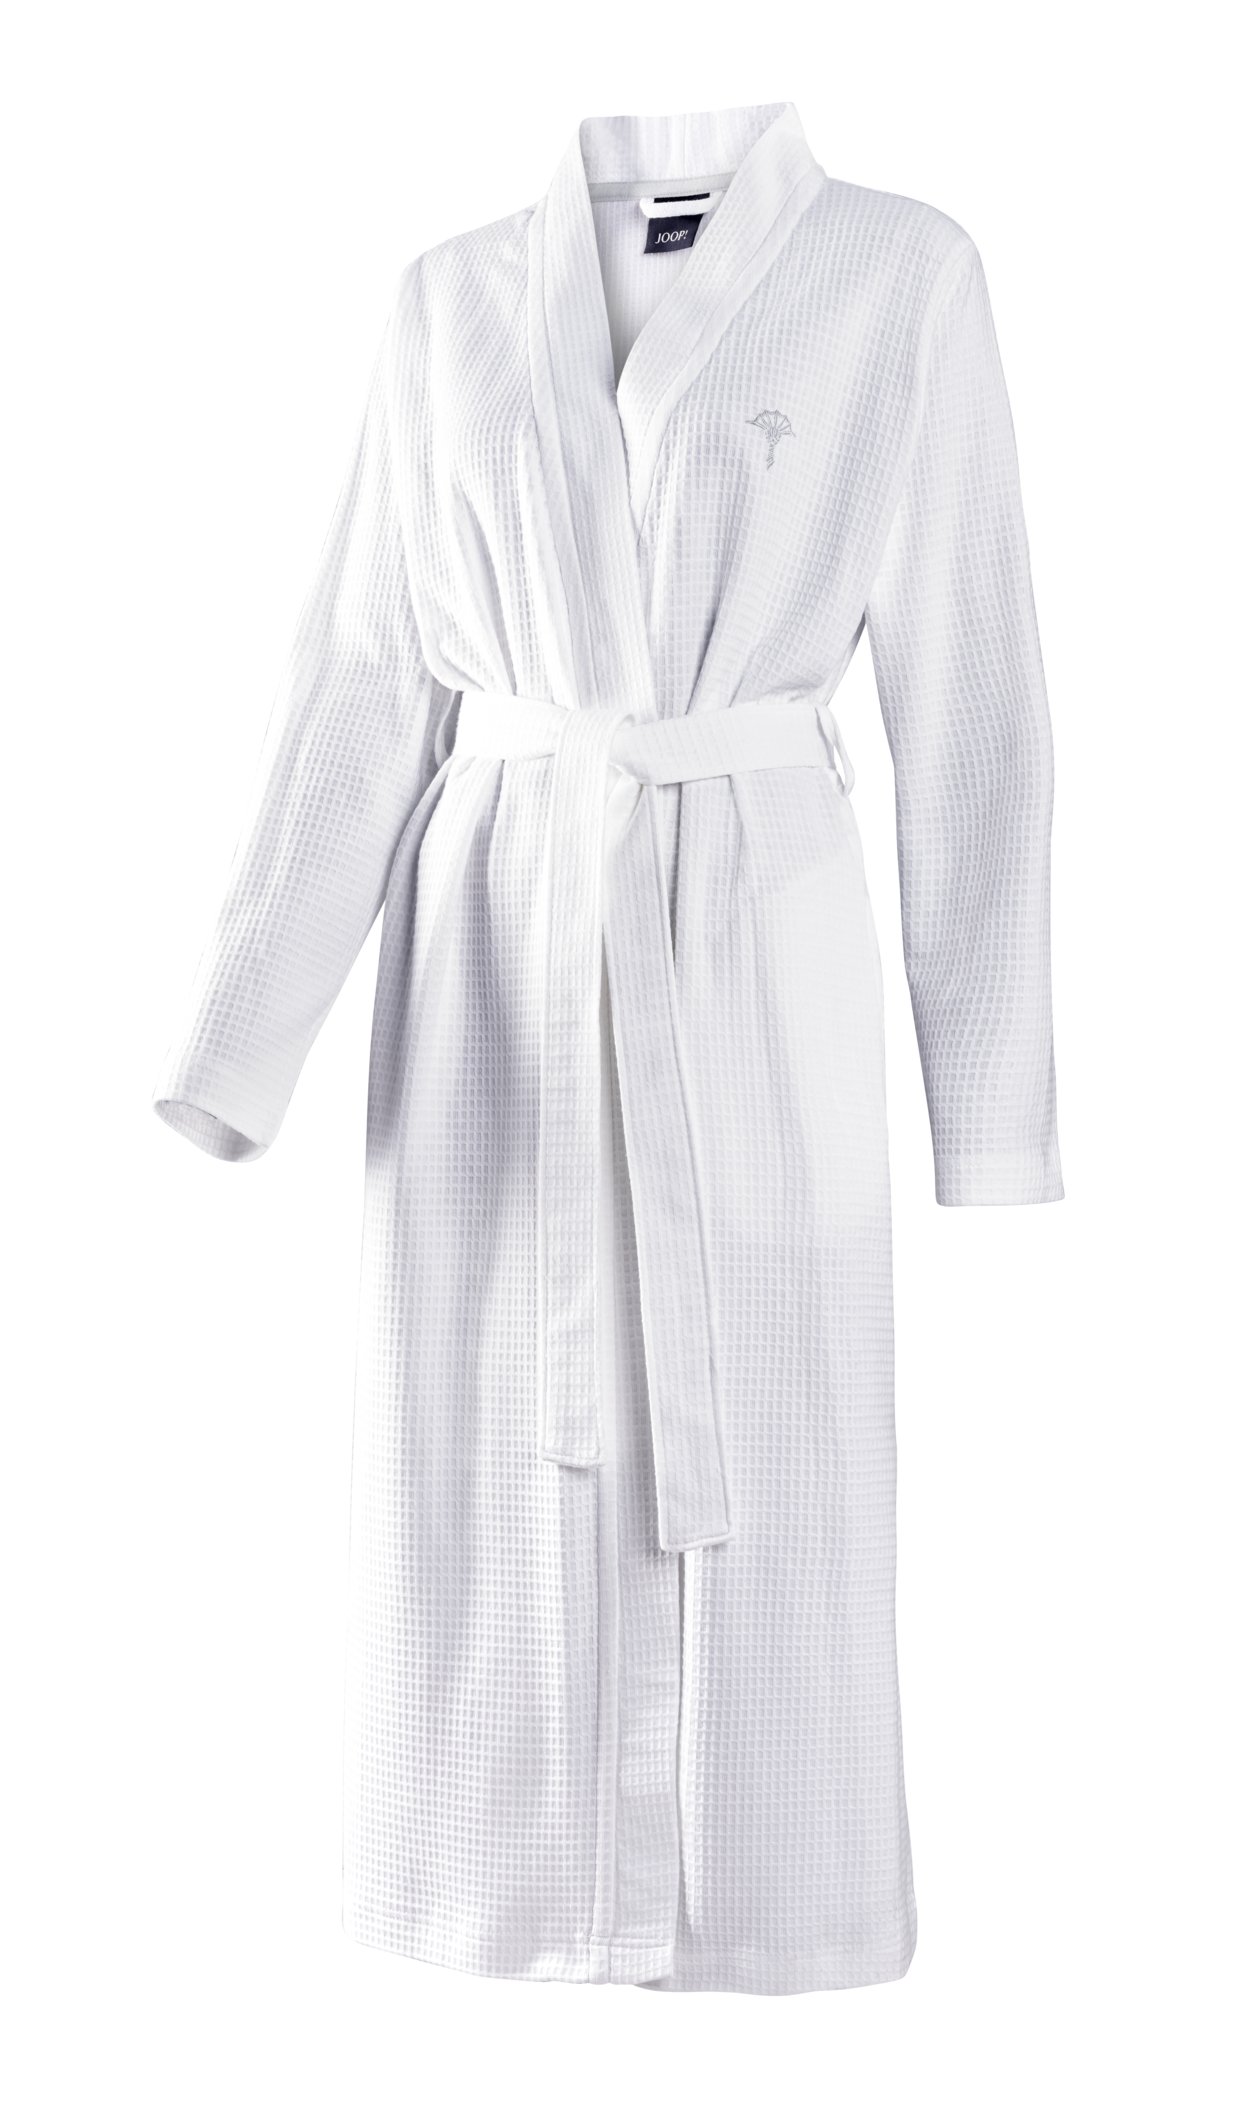 JOOP! Damen Kimono uni Piqué 1657-600 XL 48/50 leichter Bademantel Weiß